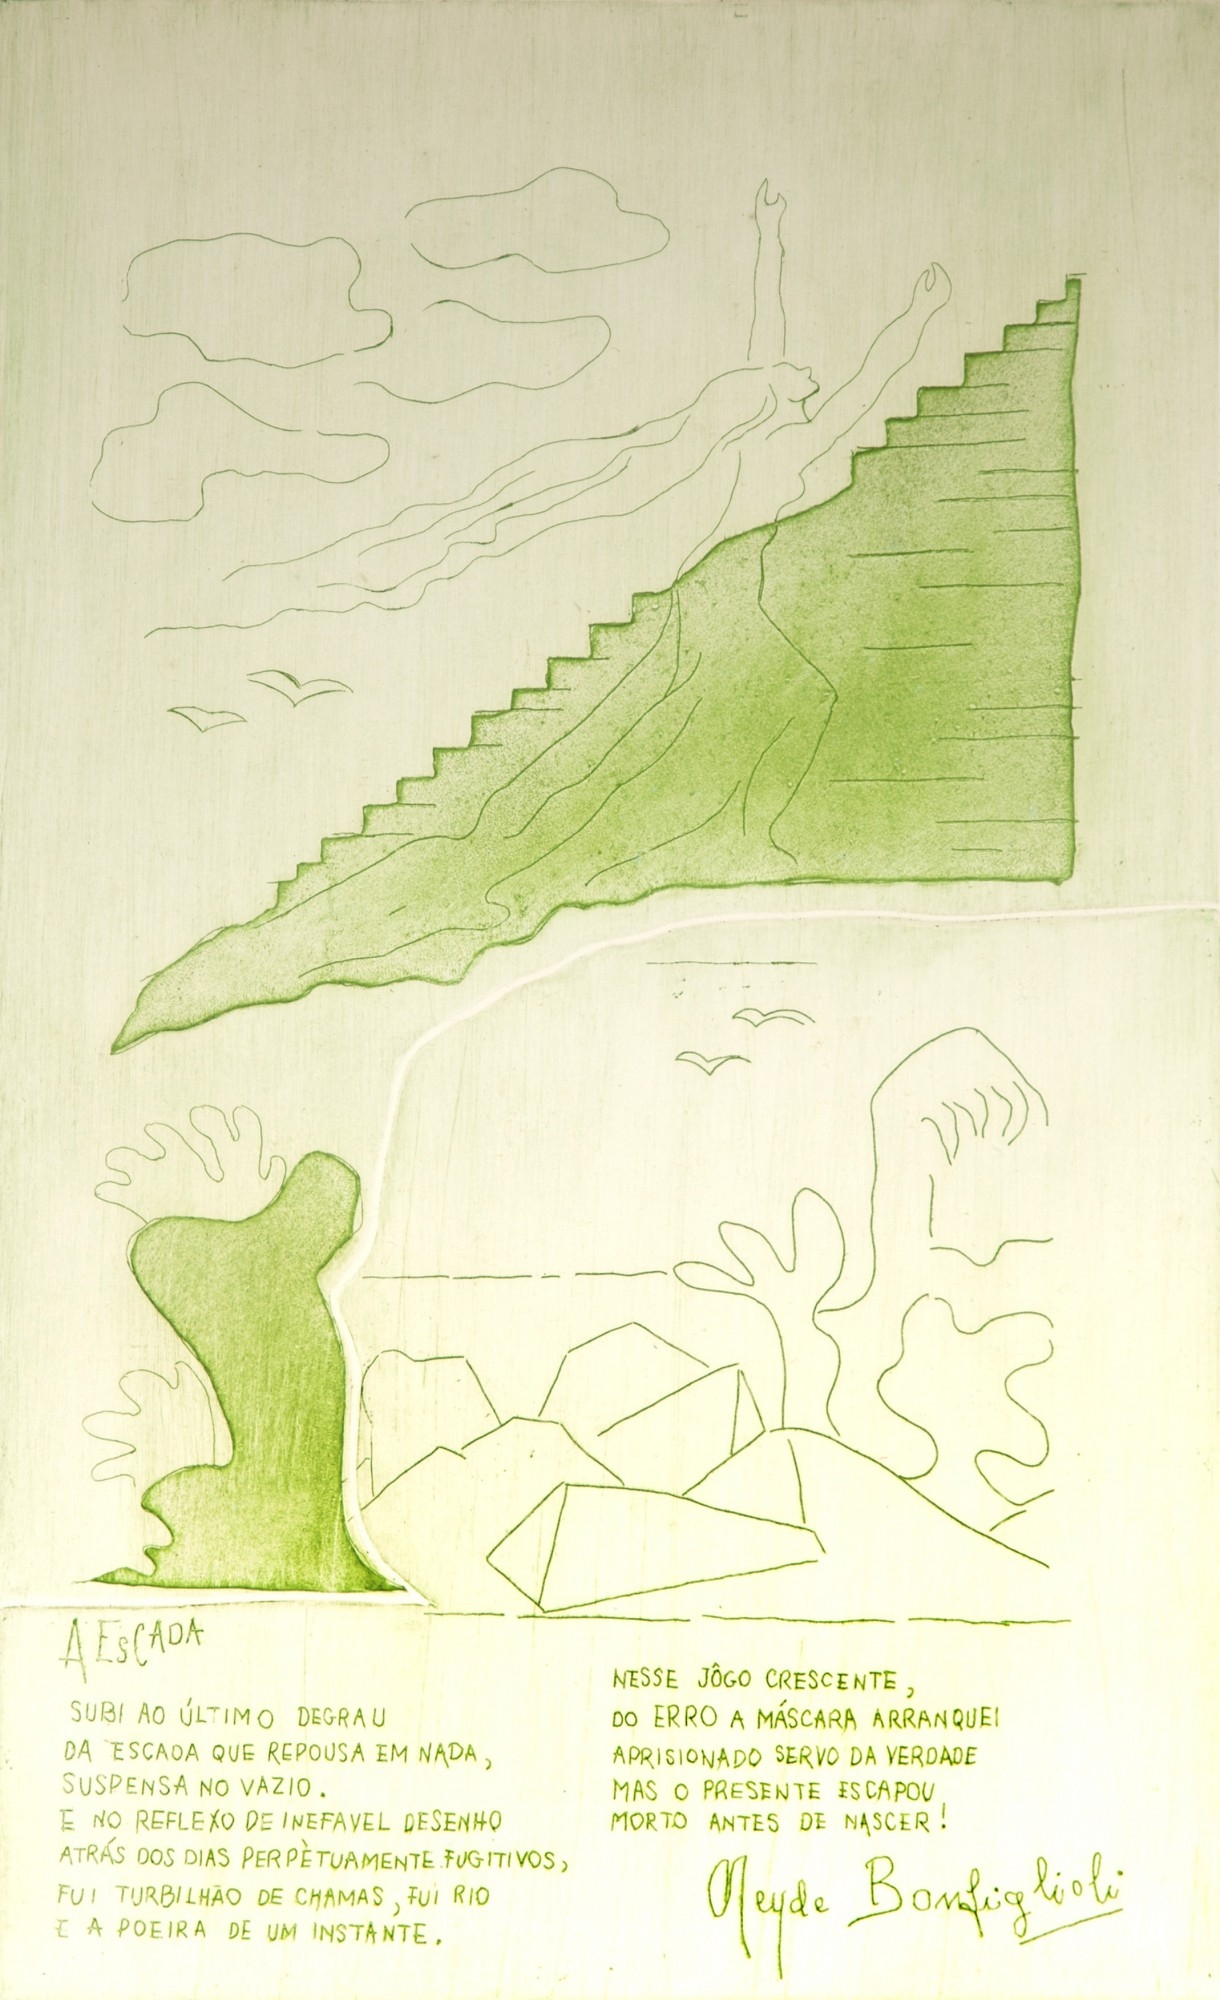 A Escada - Poesia Neyde Bonfiglioli by Tarsila do Amaral, 1972